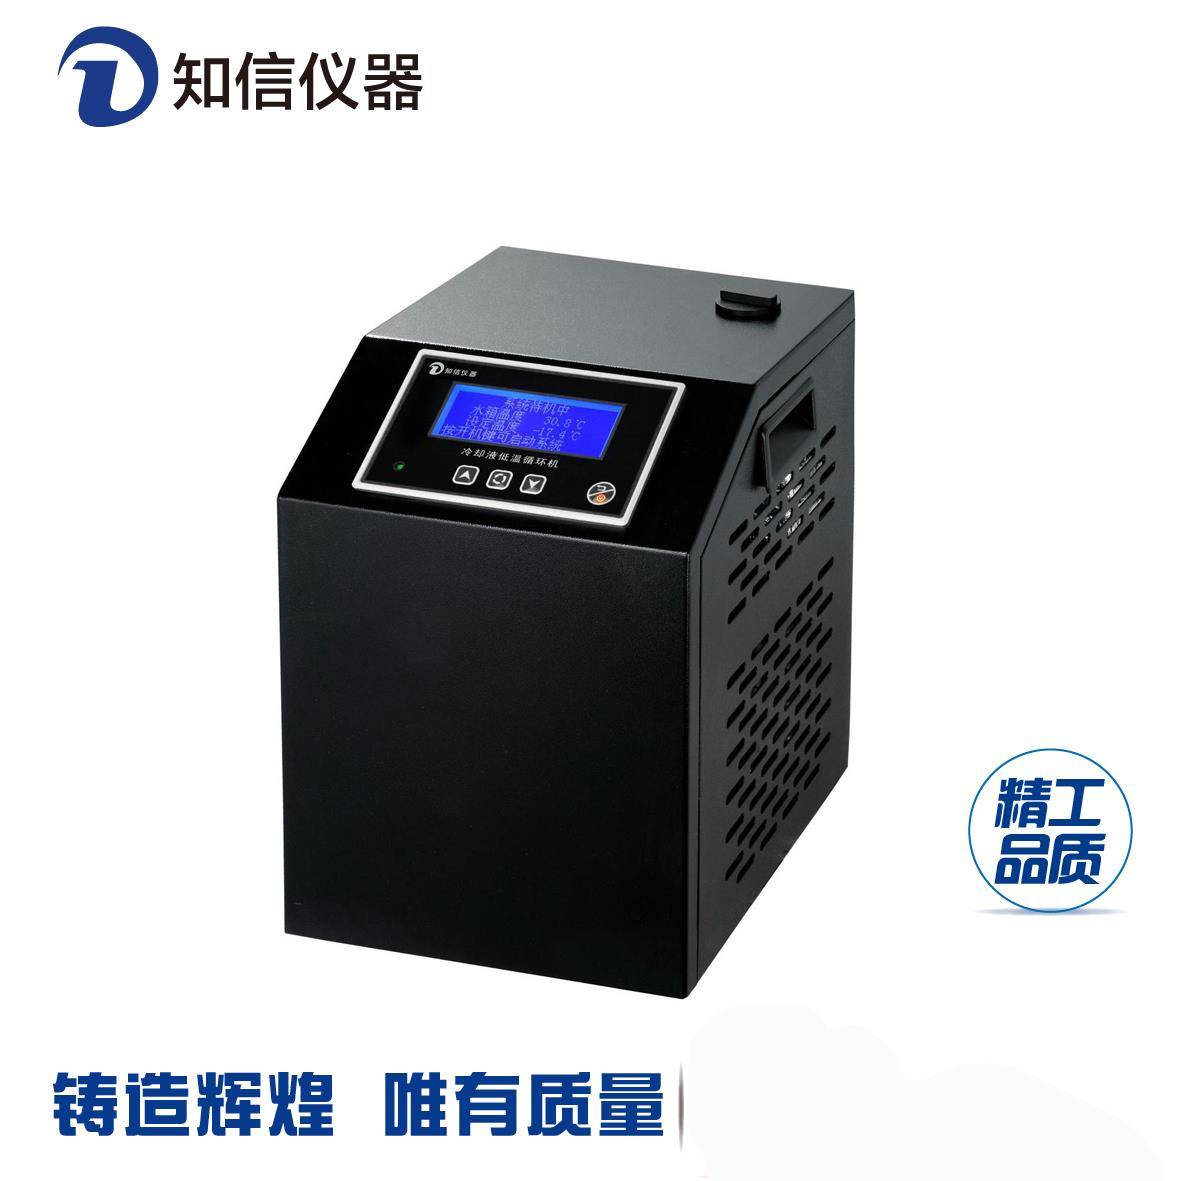 北京冷却液低温循环机ZX-LSJ-15D 制冷快、温度稳定